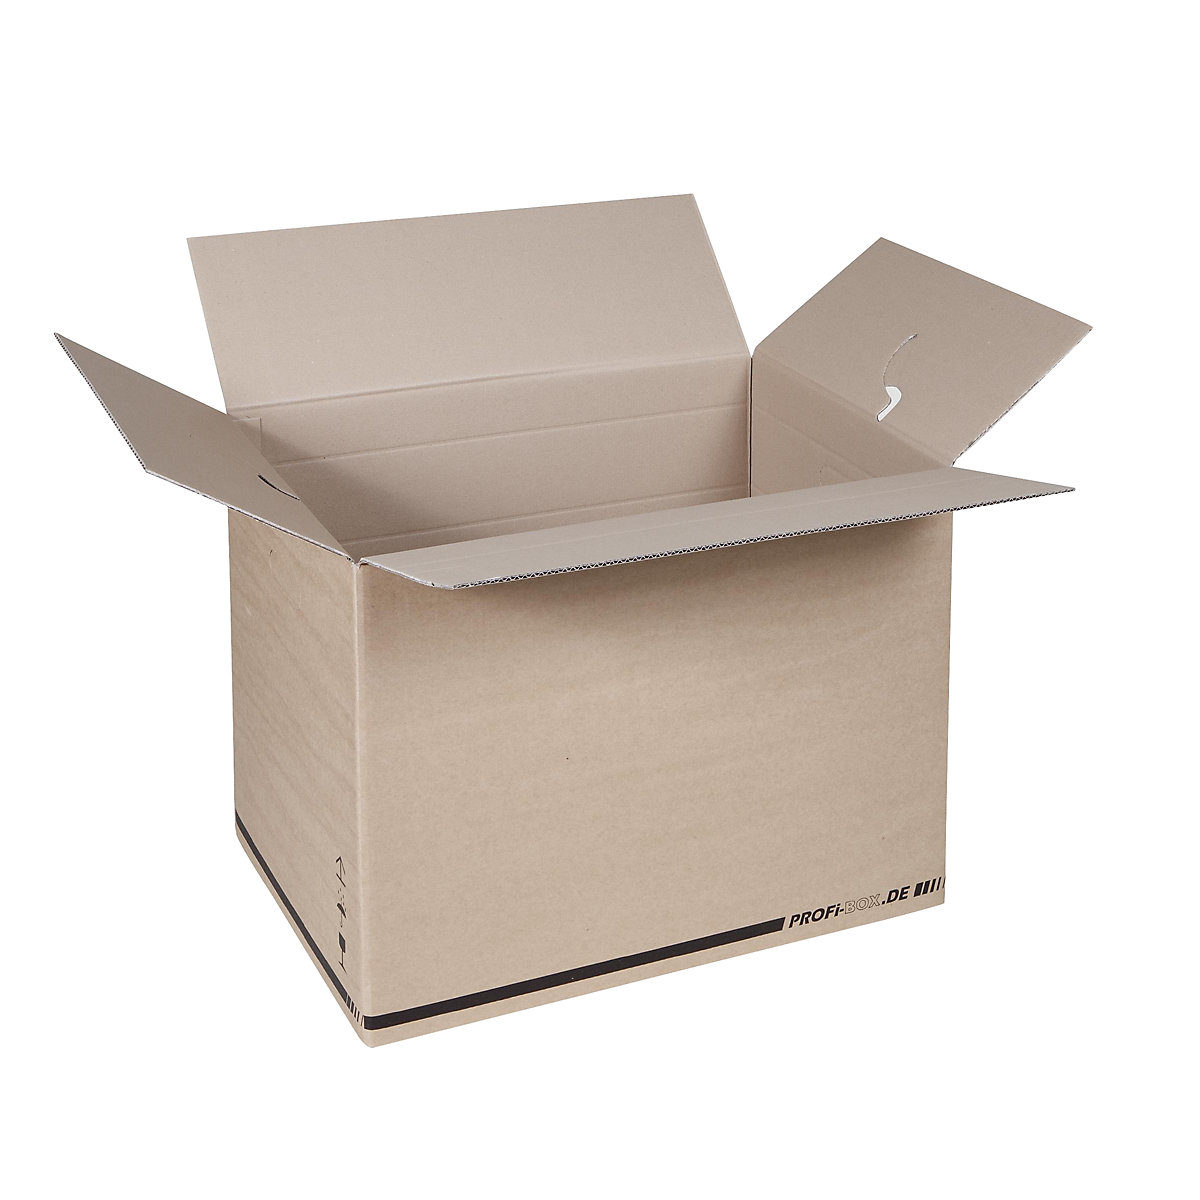 Profesionální boxy, z dvouvrstvé lepenky, vnitřní rozměry 574 x 376 x 418 mm, FEFCO 0216, bal.j. 50 ks-1